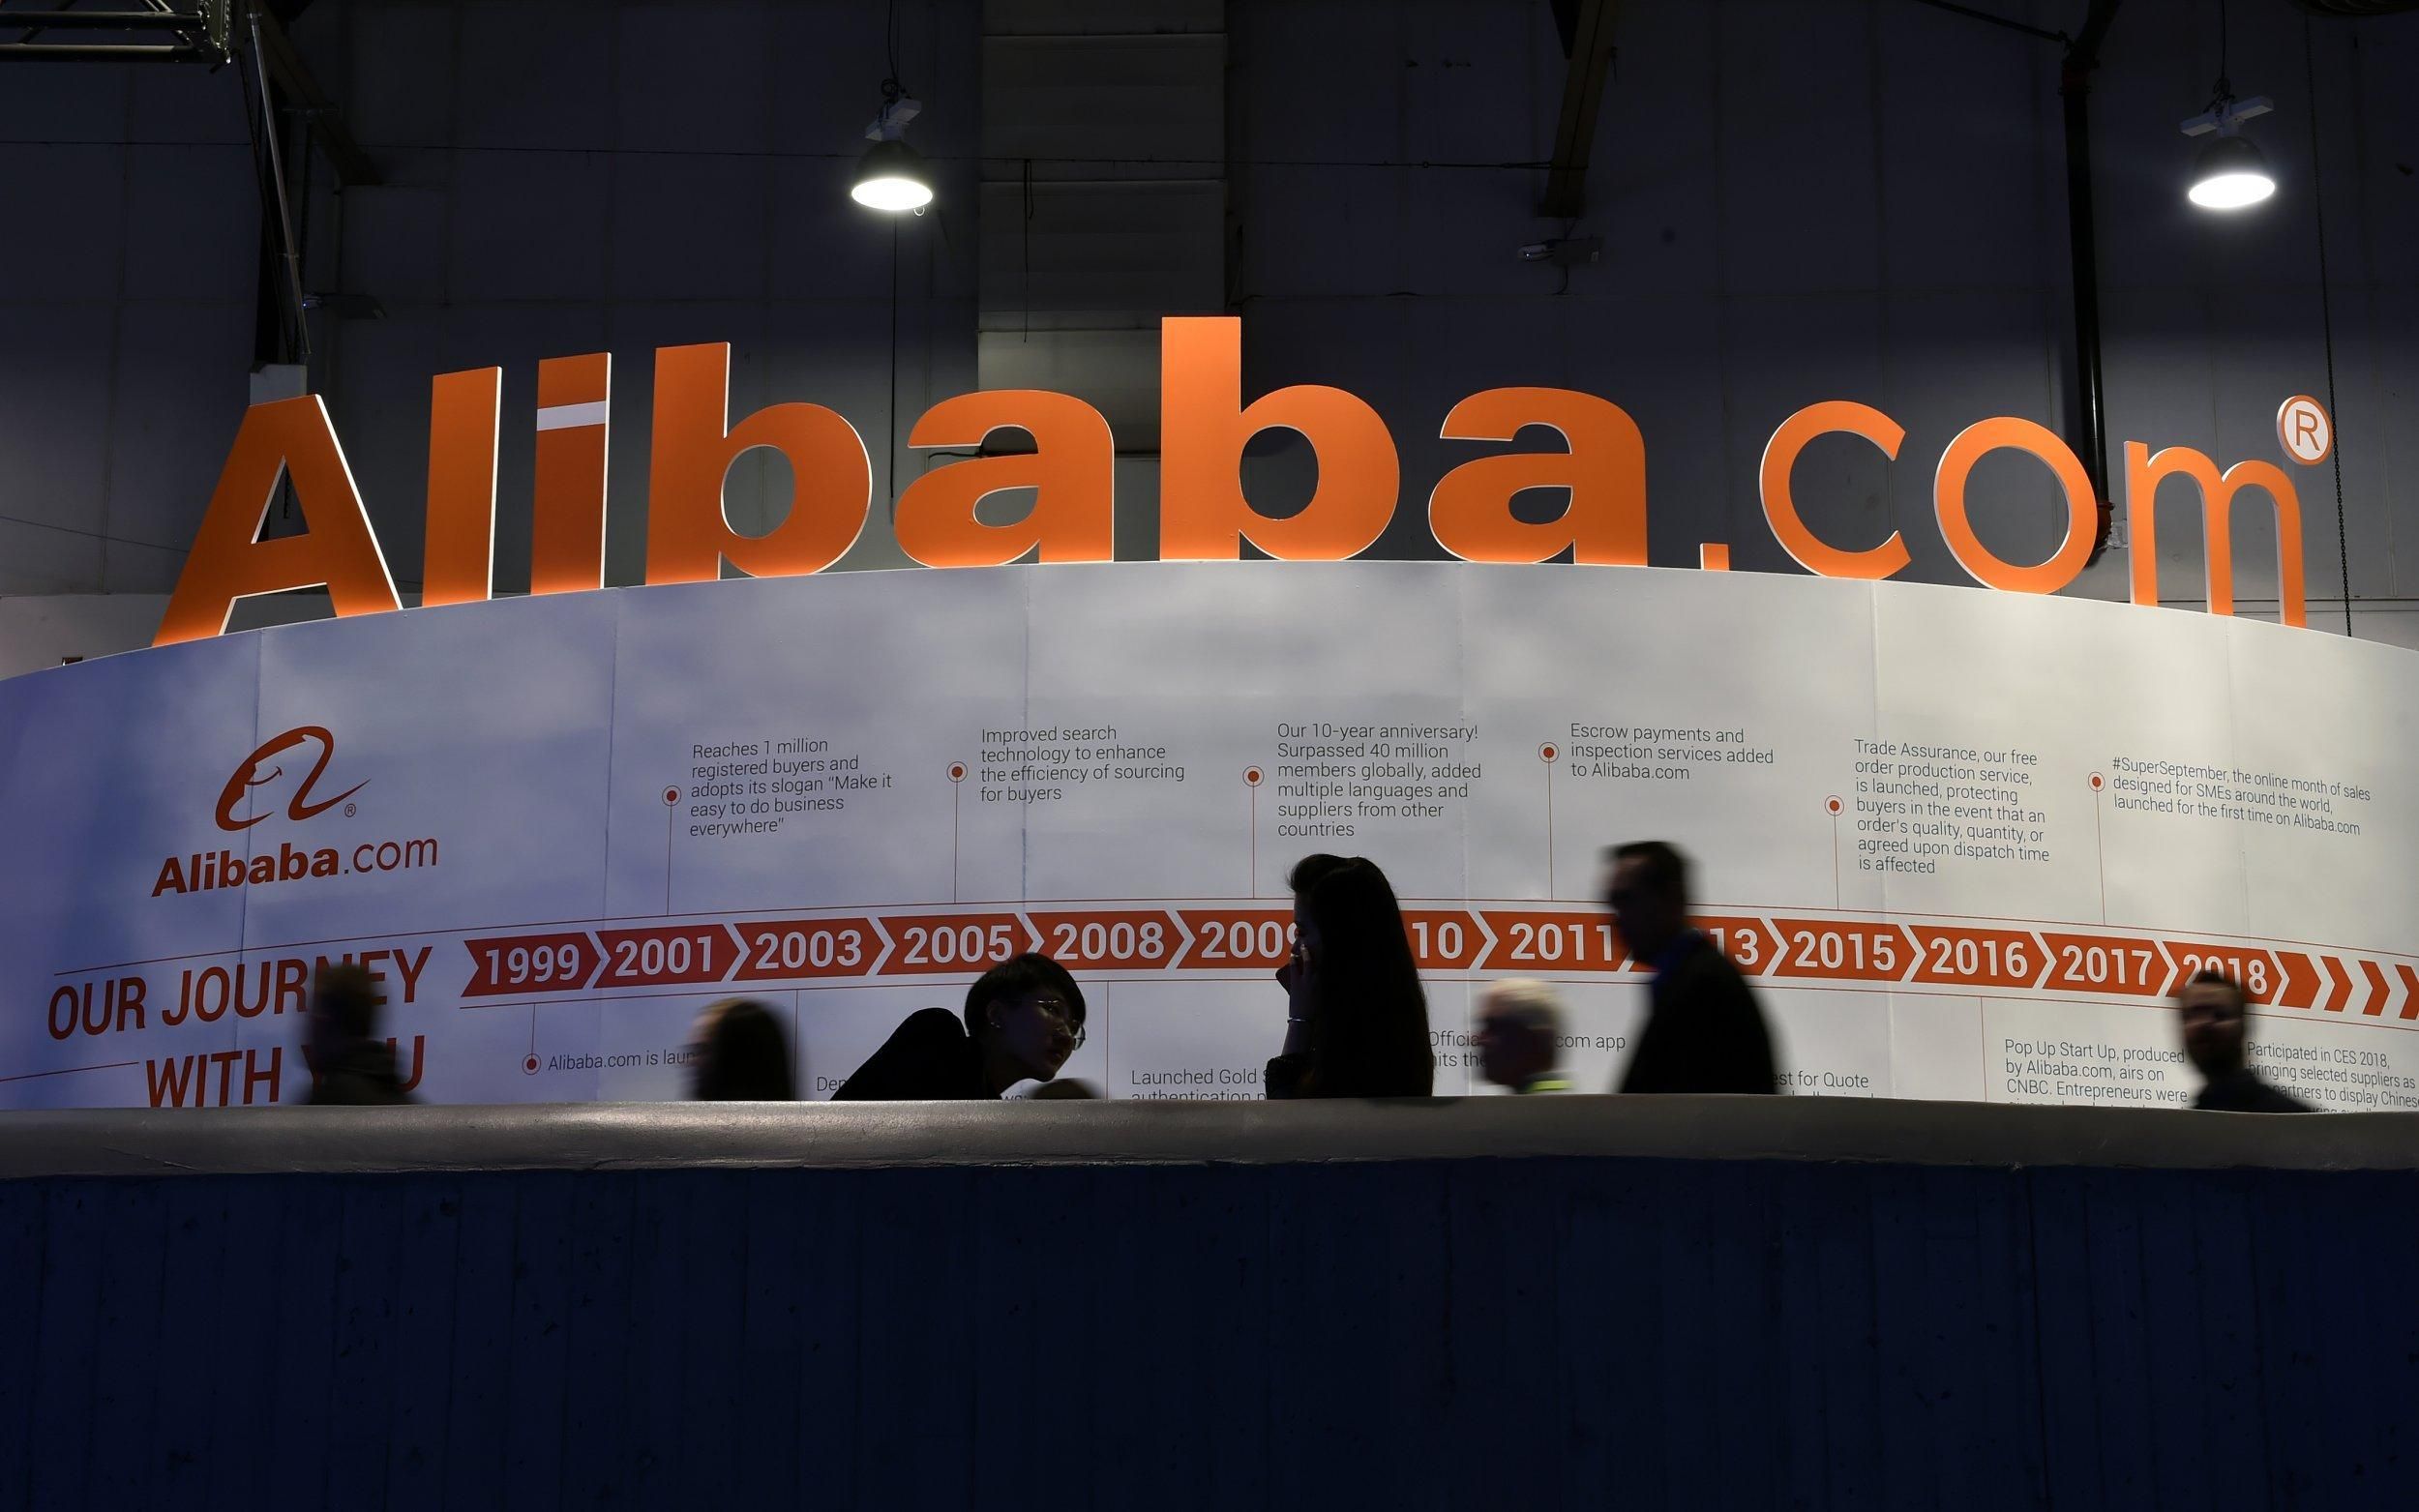 Китай получит от Alibaba более 15 миллиардов долларов: при чем здесь "всеобщее процветание" - Финансы